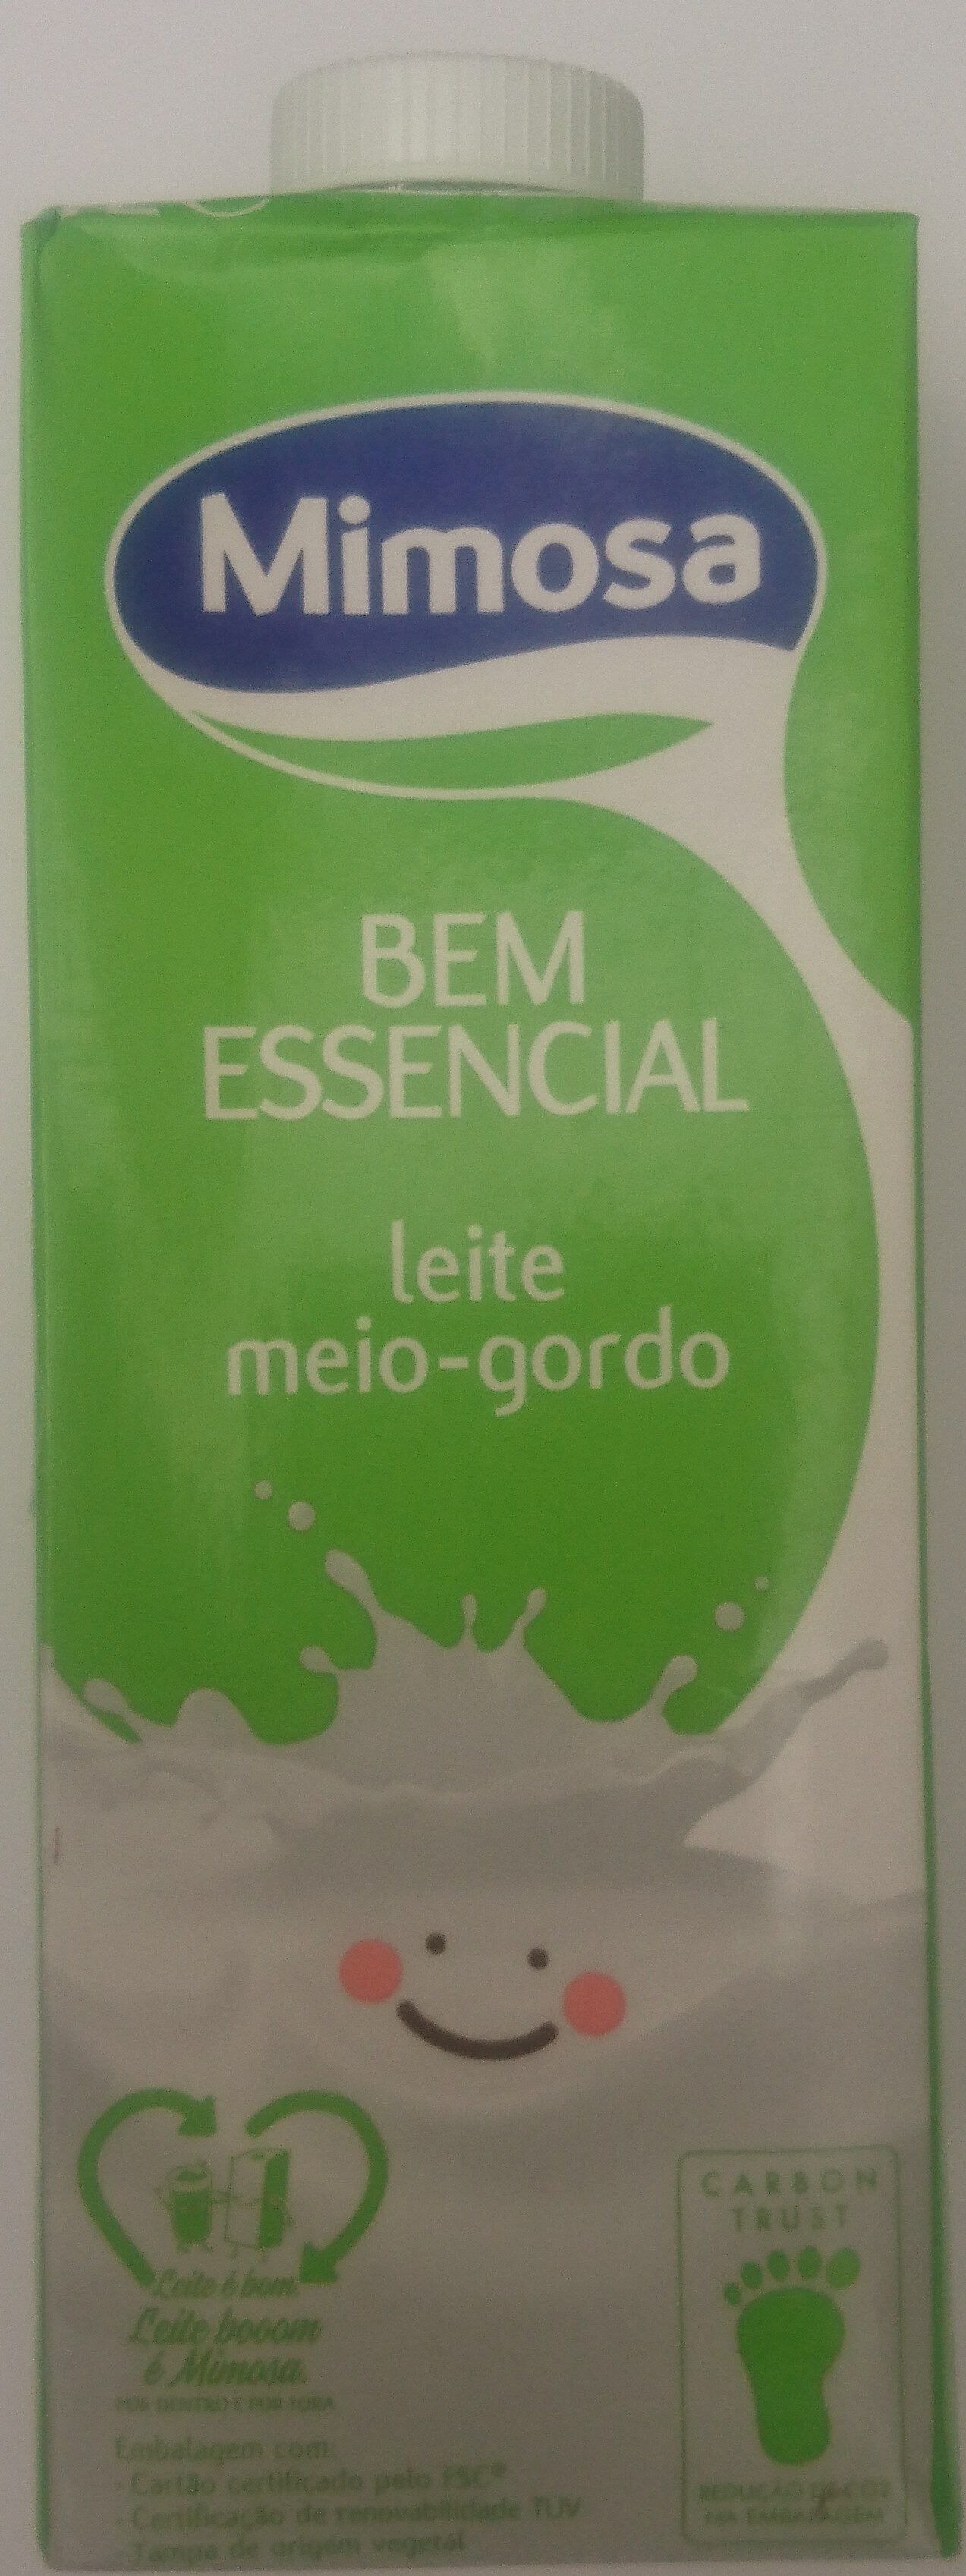 Leite Meio Gordo Mimosa - Produto